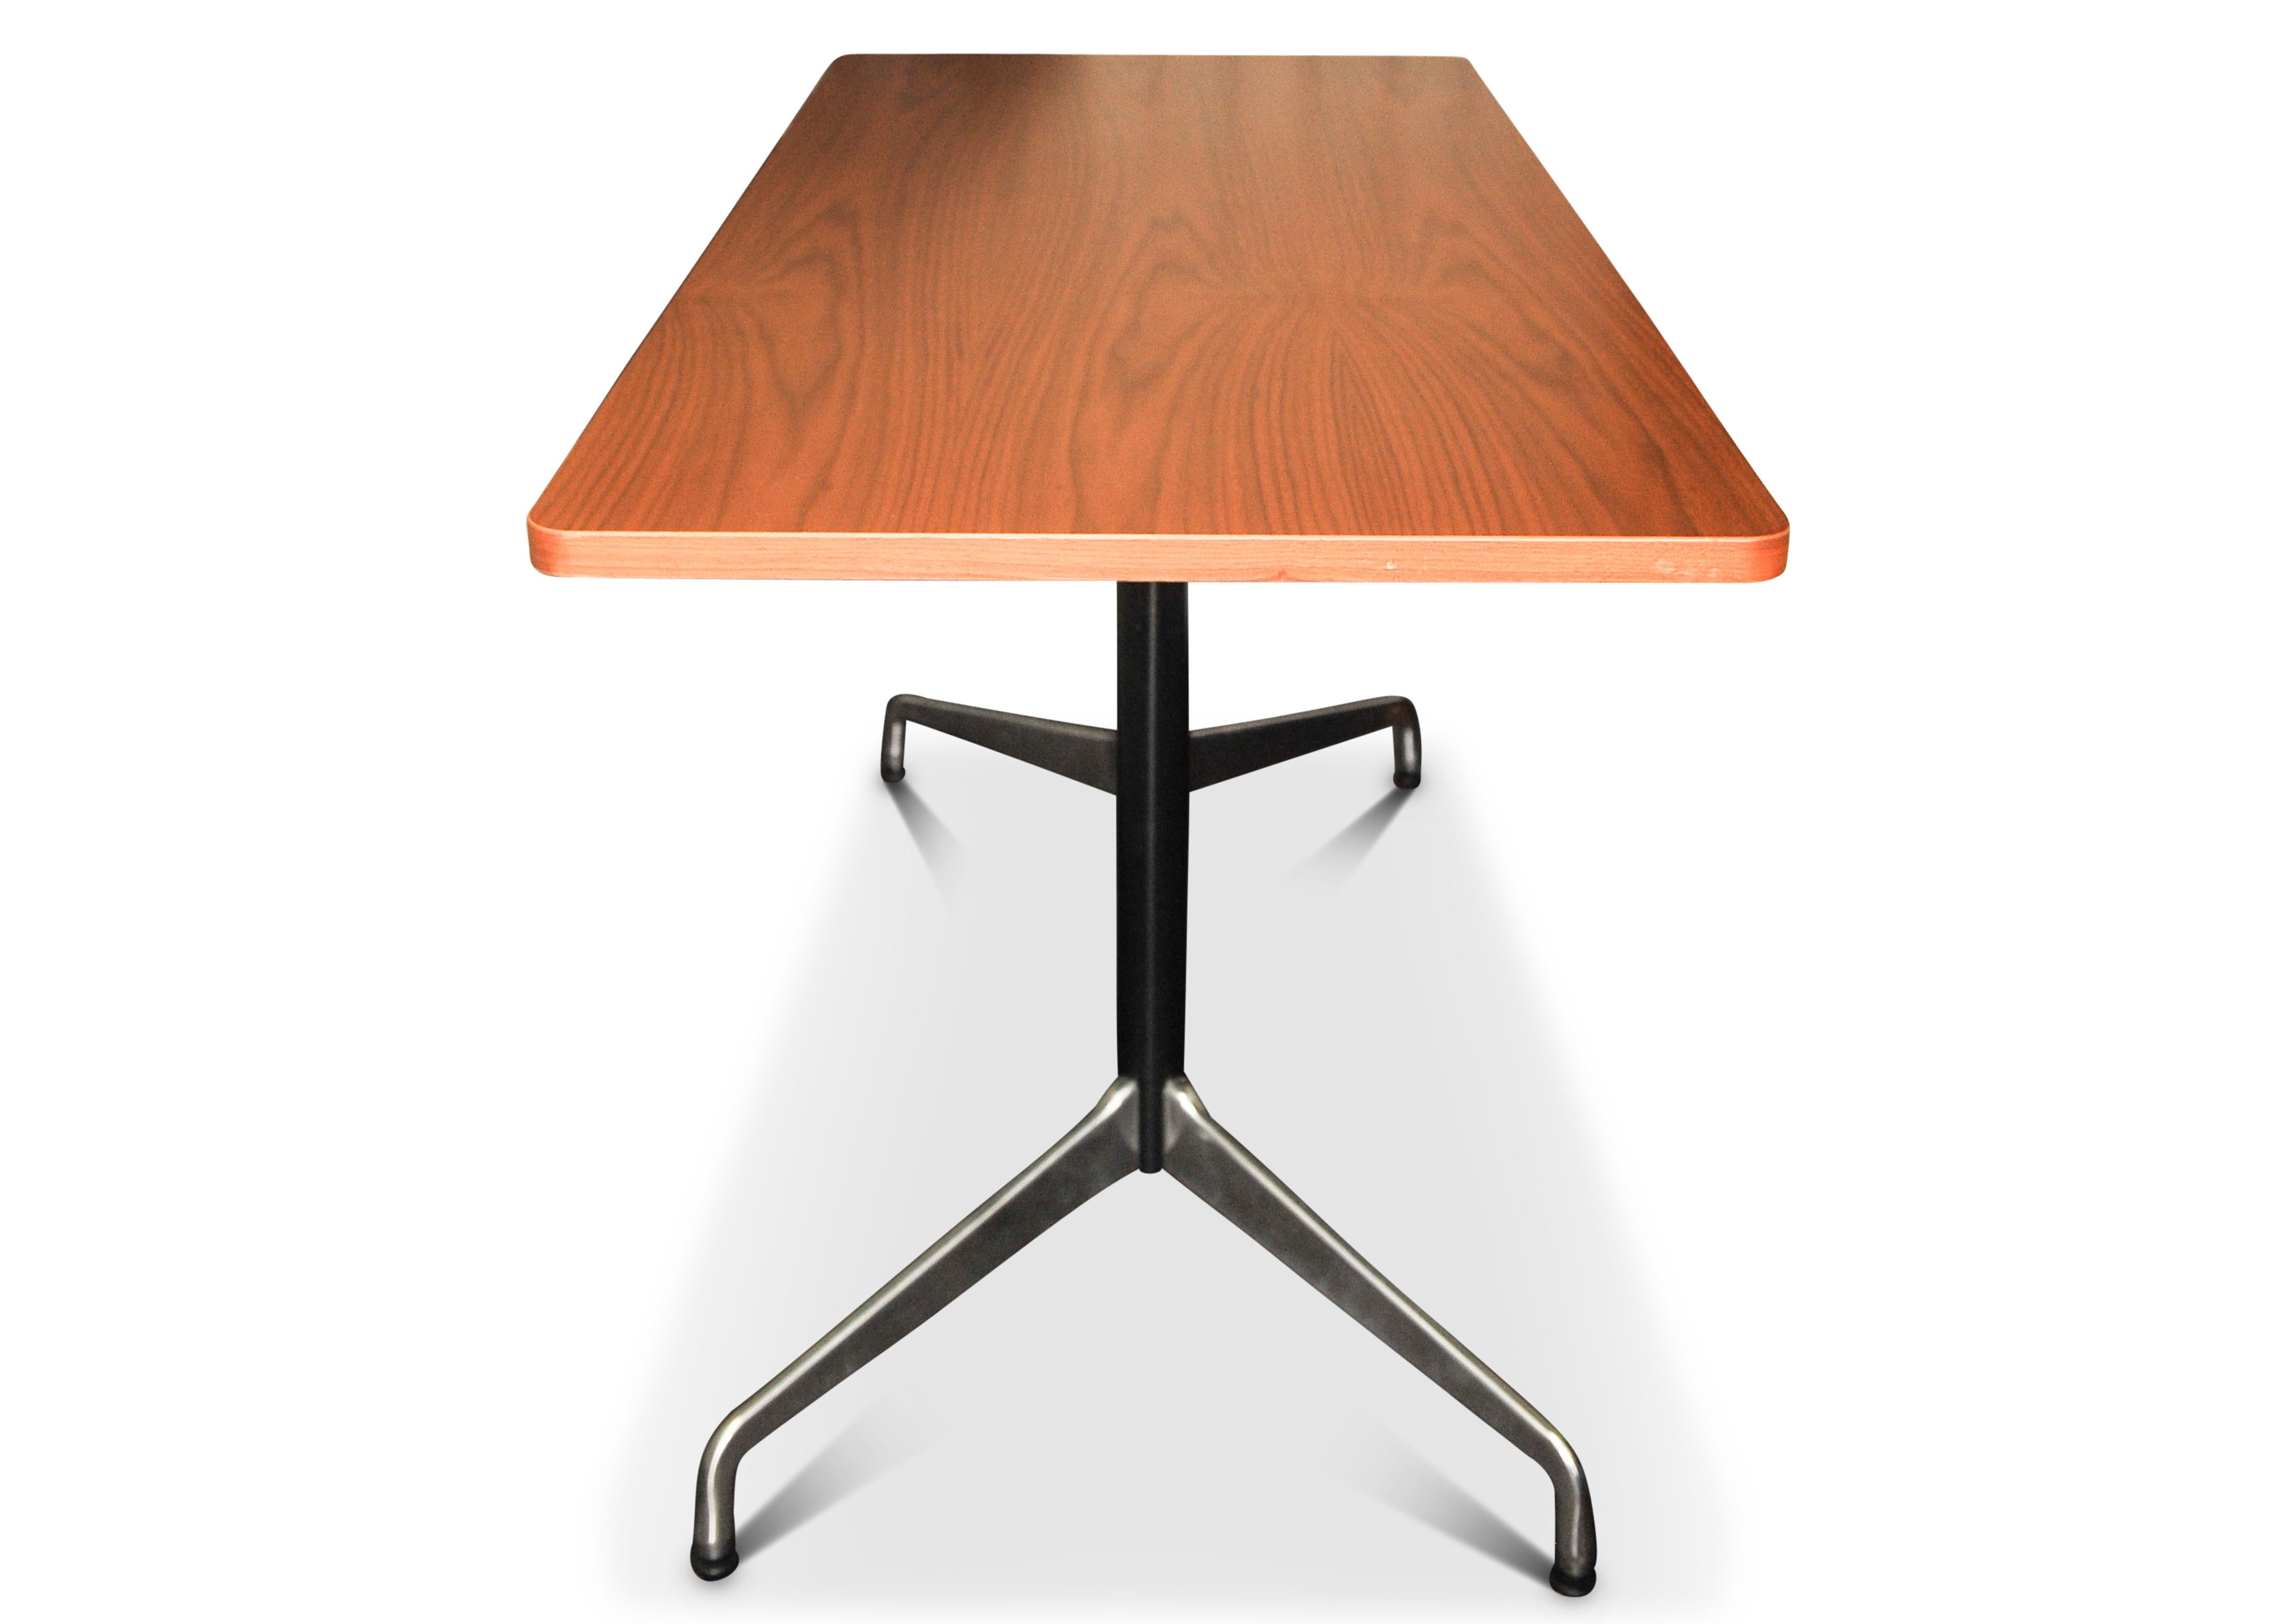 Charles & Ray Eames für Herman Miller Segmentierter Tisch aus Nussbaum und Stahl mit rechteckiger Platte auf zwei Stützen

Auf der Unterseite des Tisches ist ein Echtheitszertifikat von Herman Miller aufgestempelt.

Die 1964 auf den Markt gebrachten